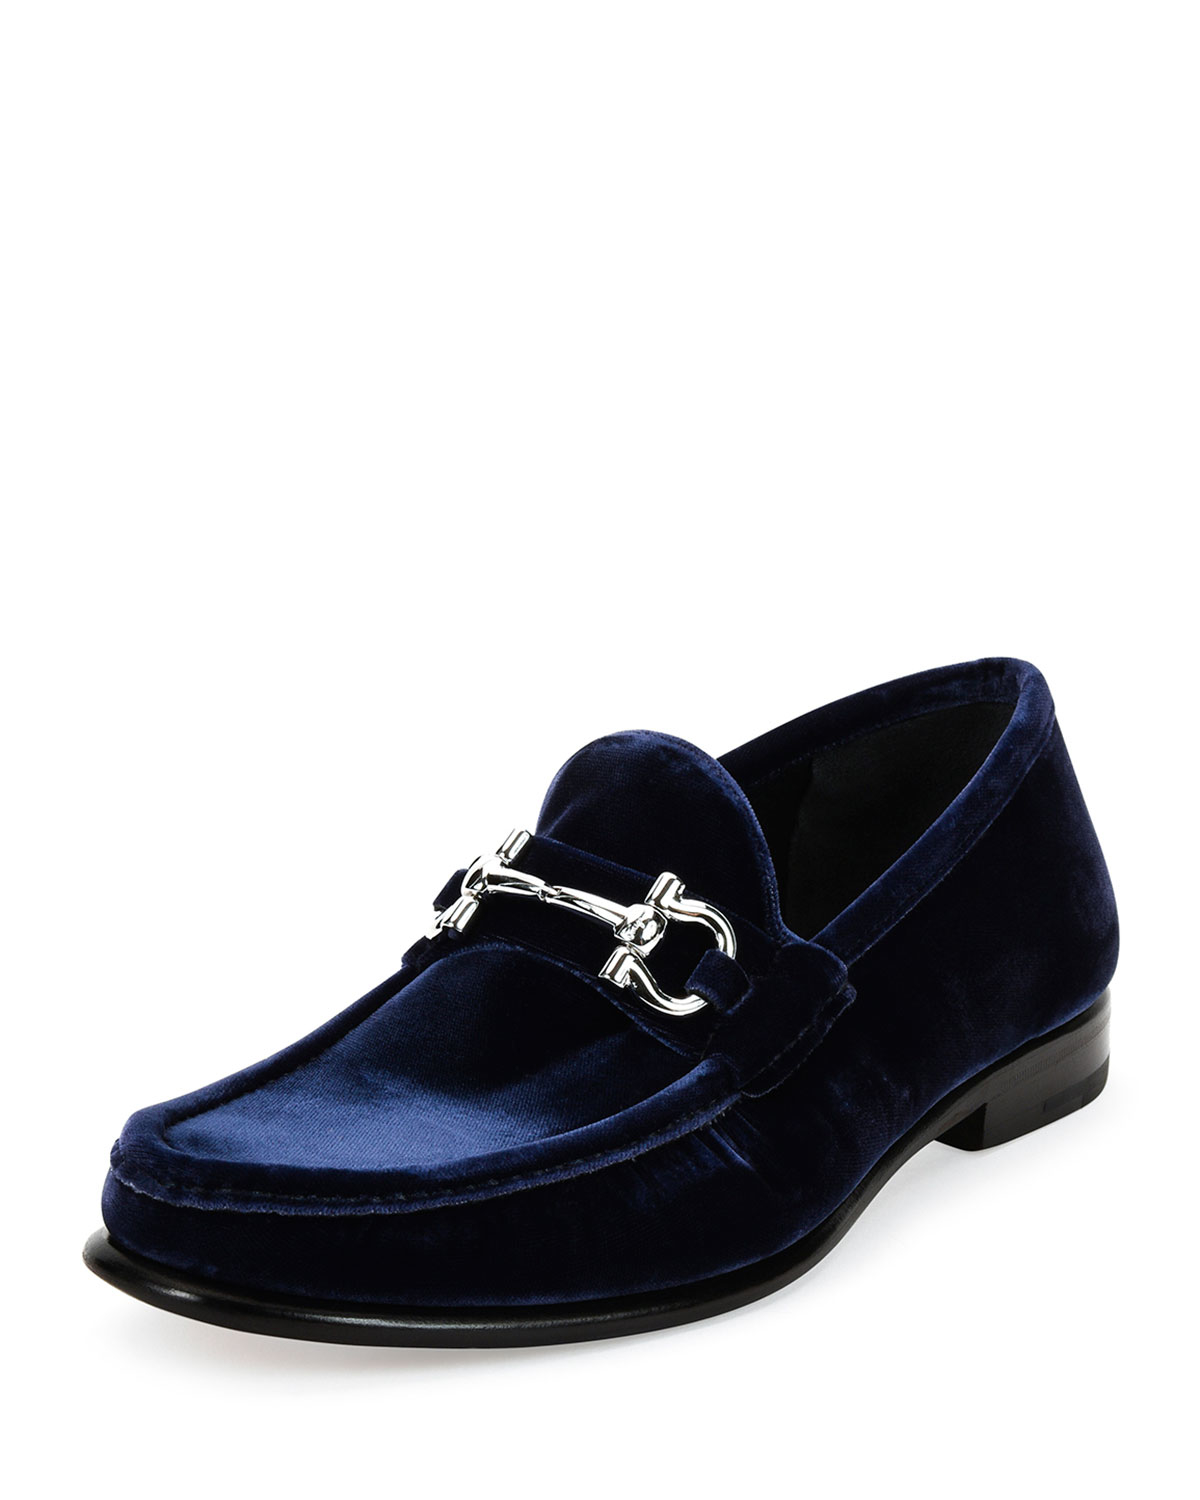 Lyst - Ferragamo Mason 2 Ng Velvet Gancini Loafer in Blue for Men